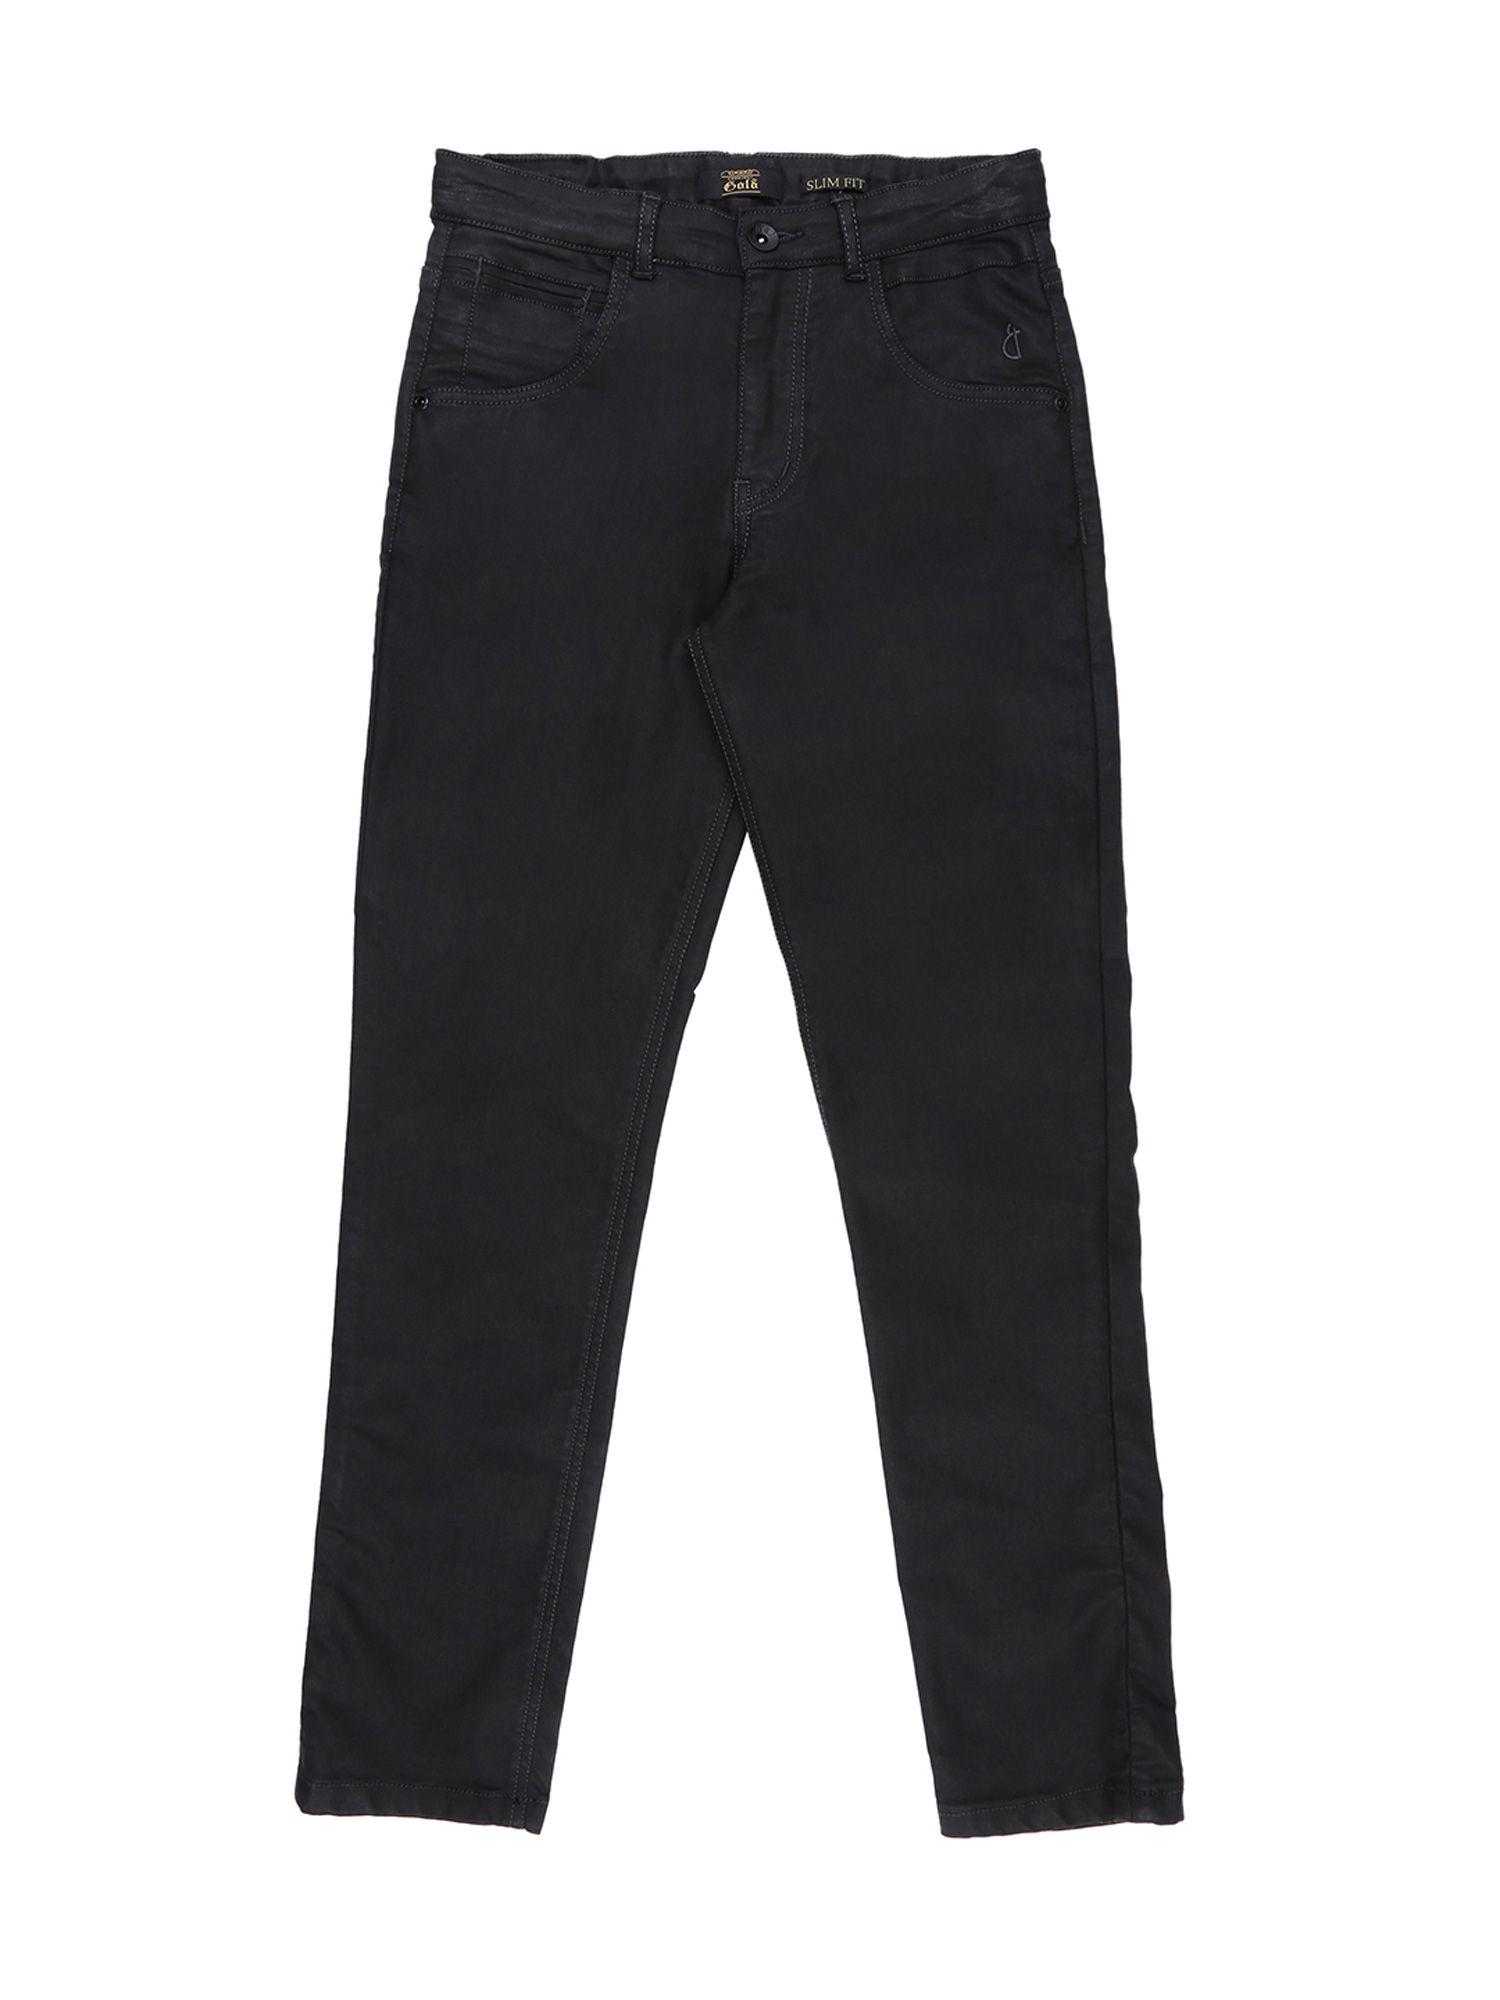 black-premium-jeans